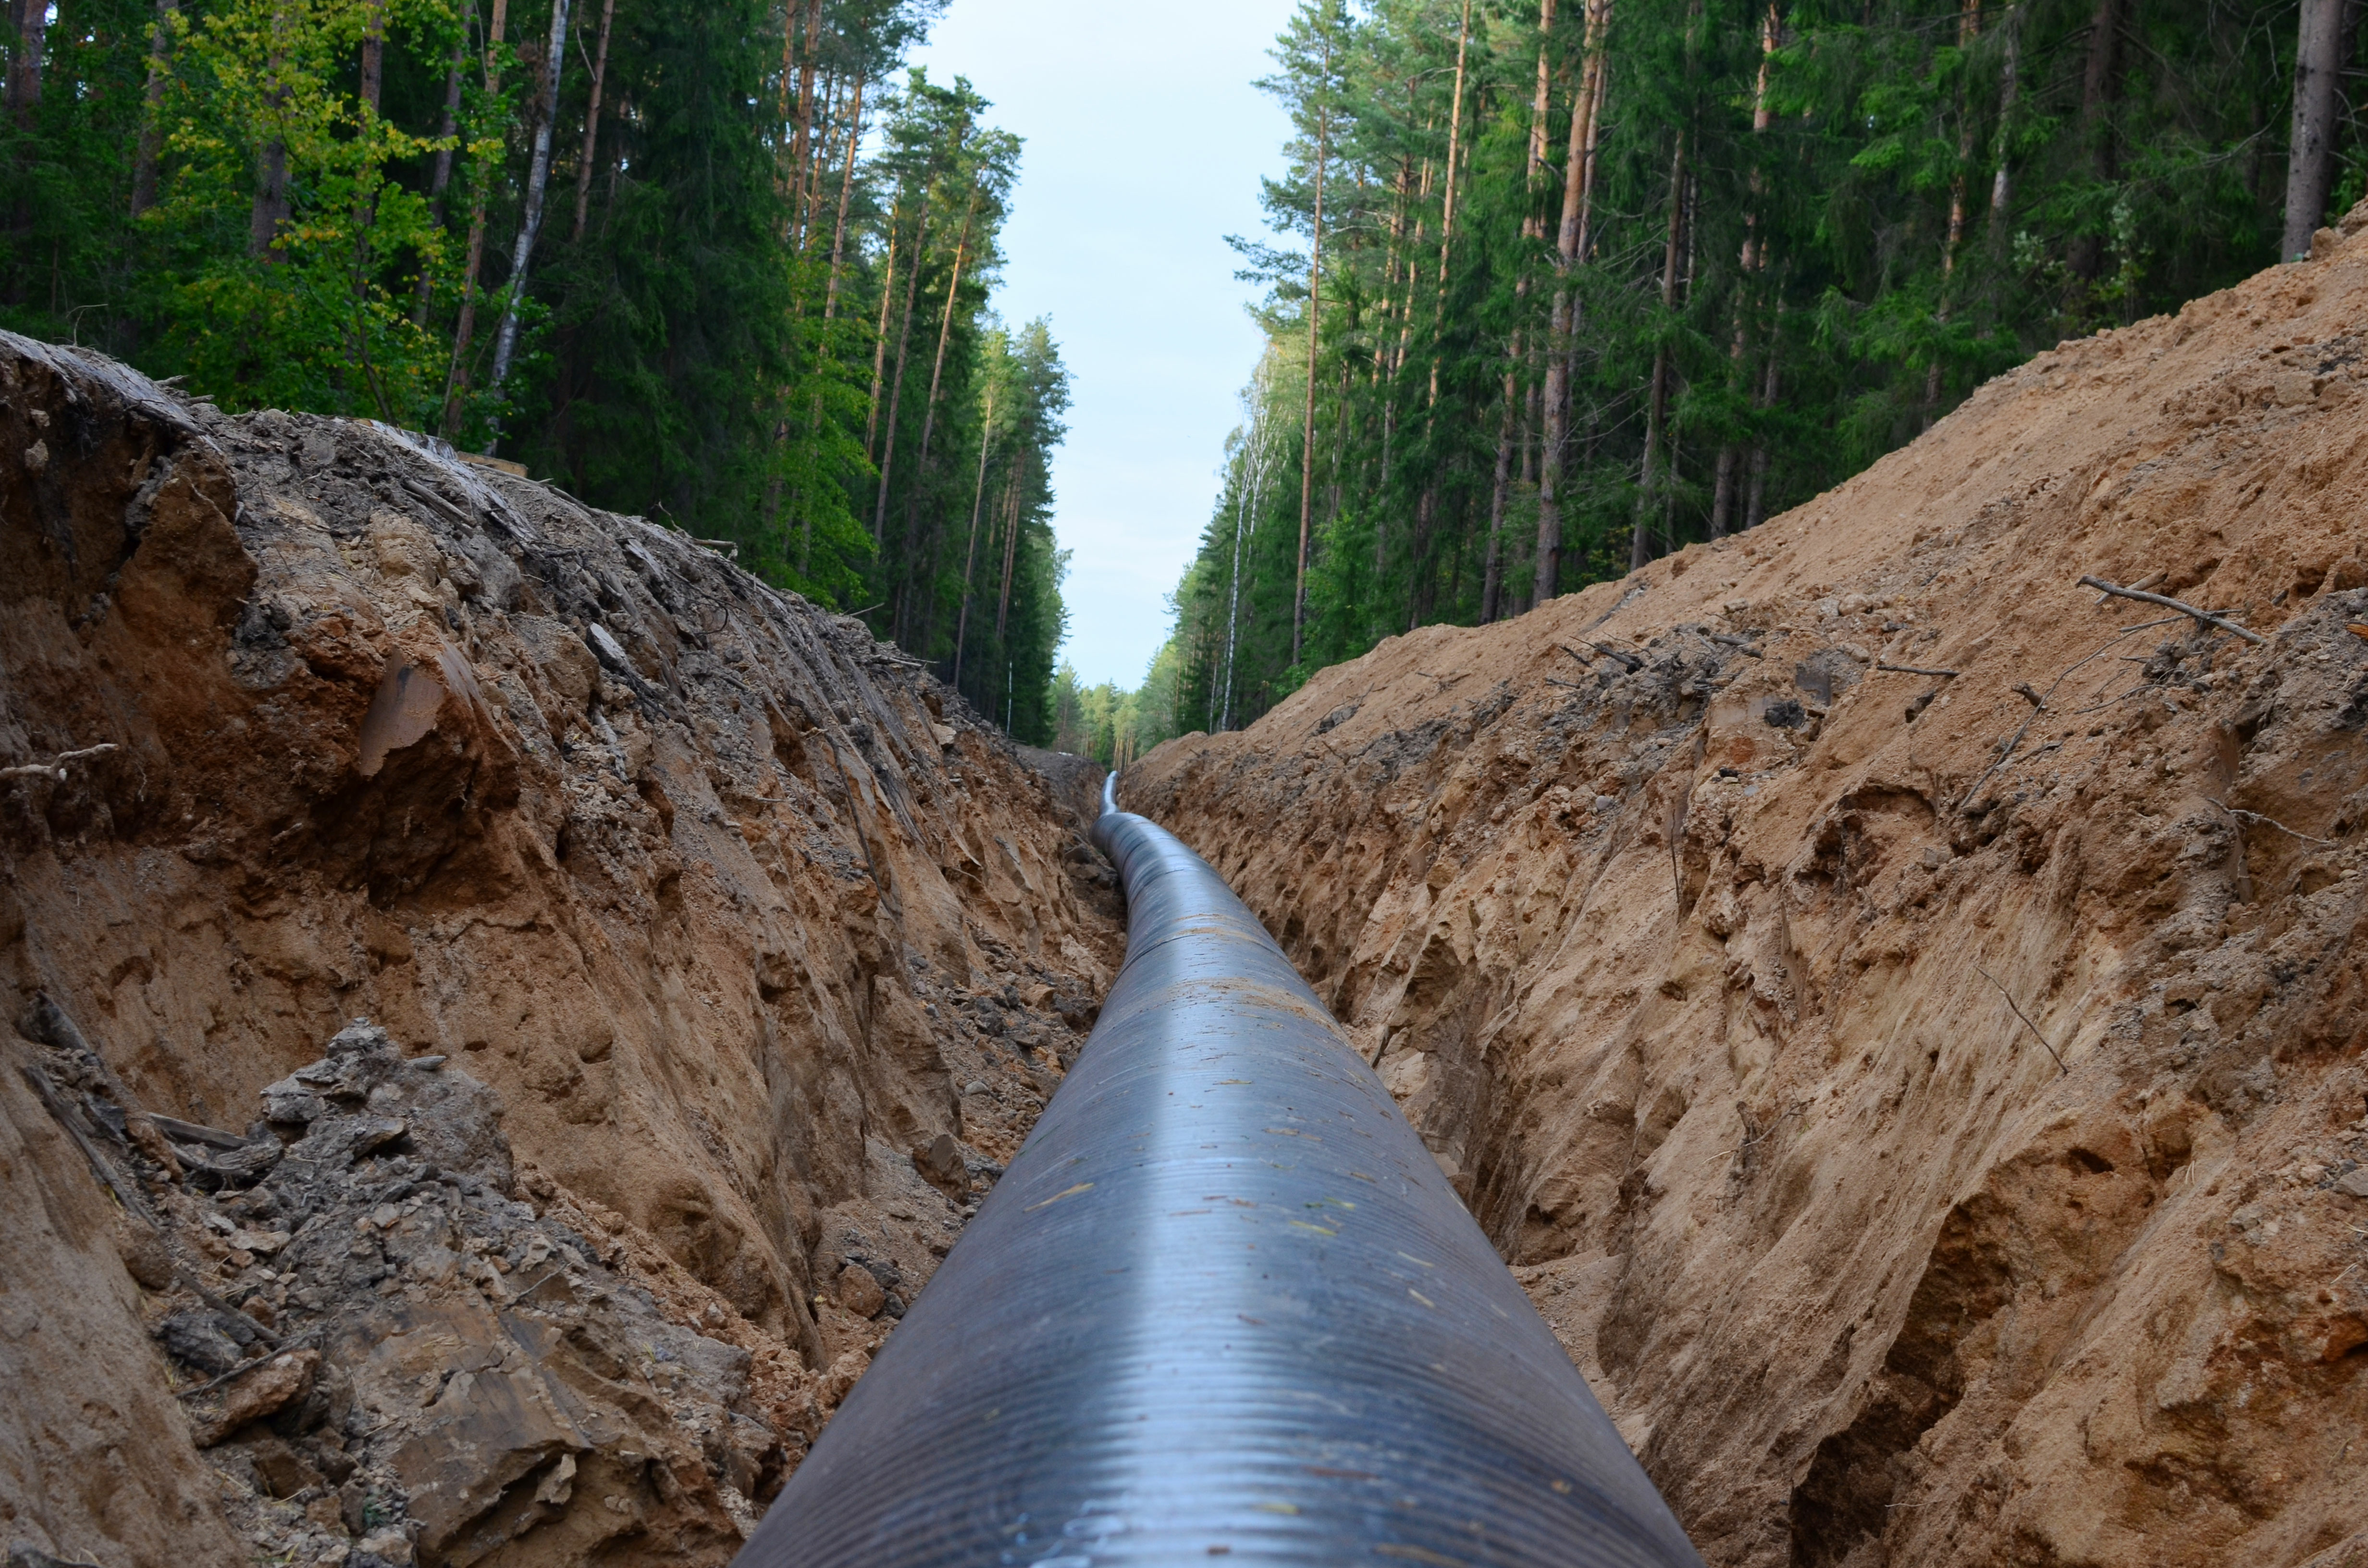 Un pipeline dans une tranchée rocheuse longée par une forêt de chaque côté.